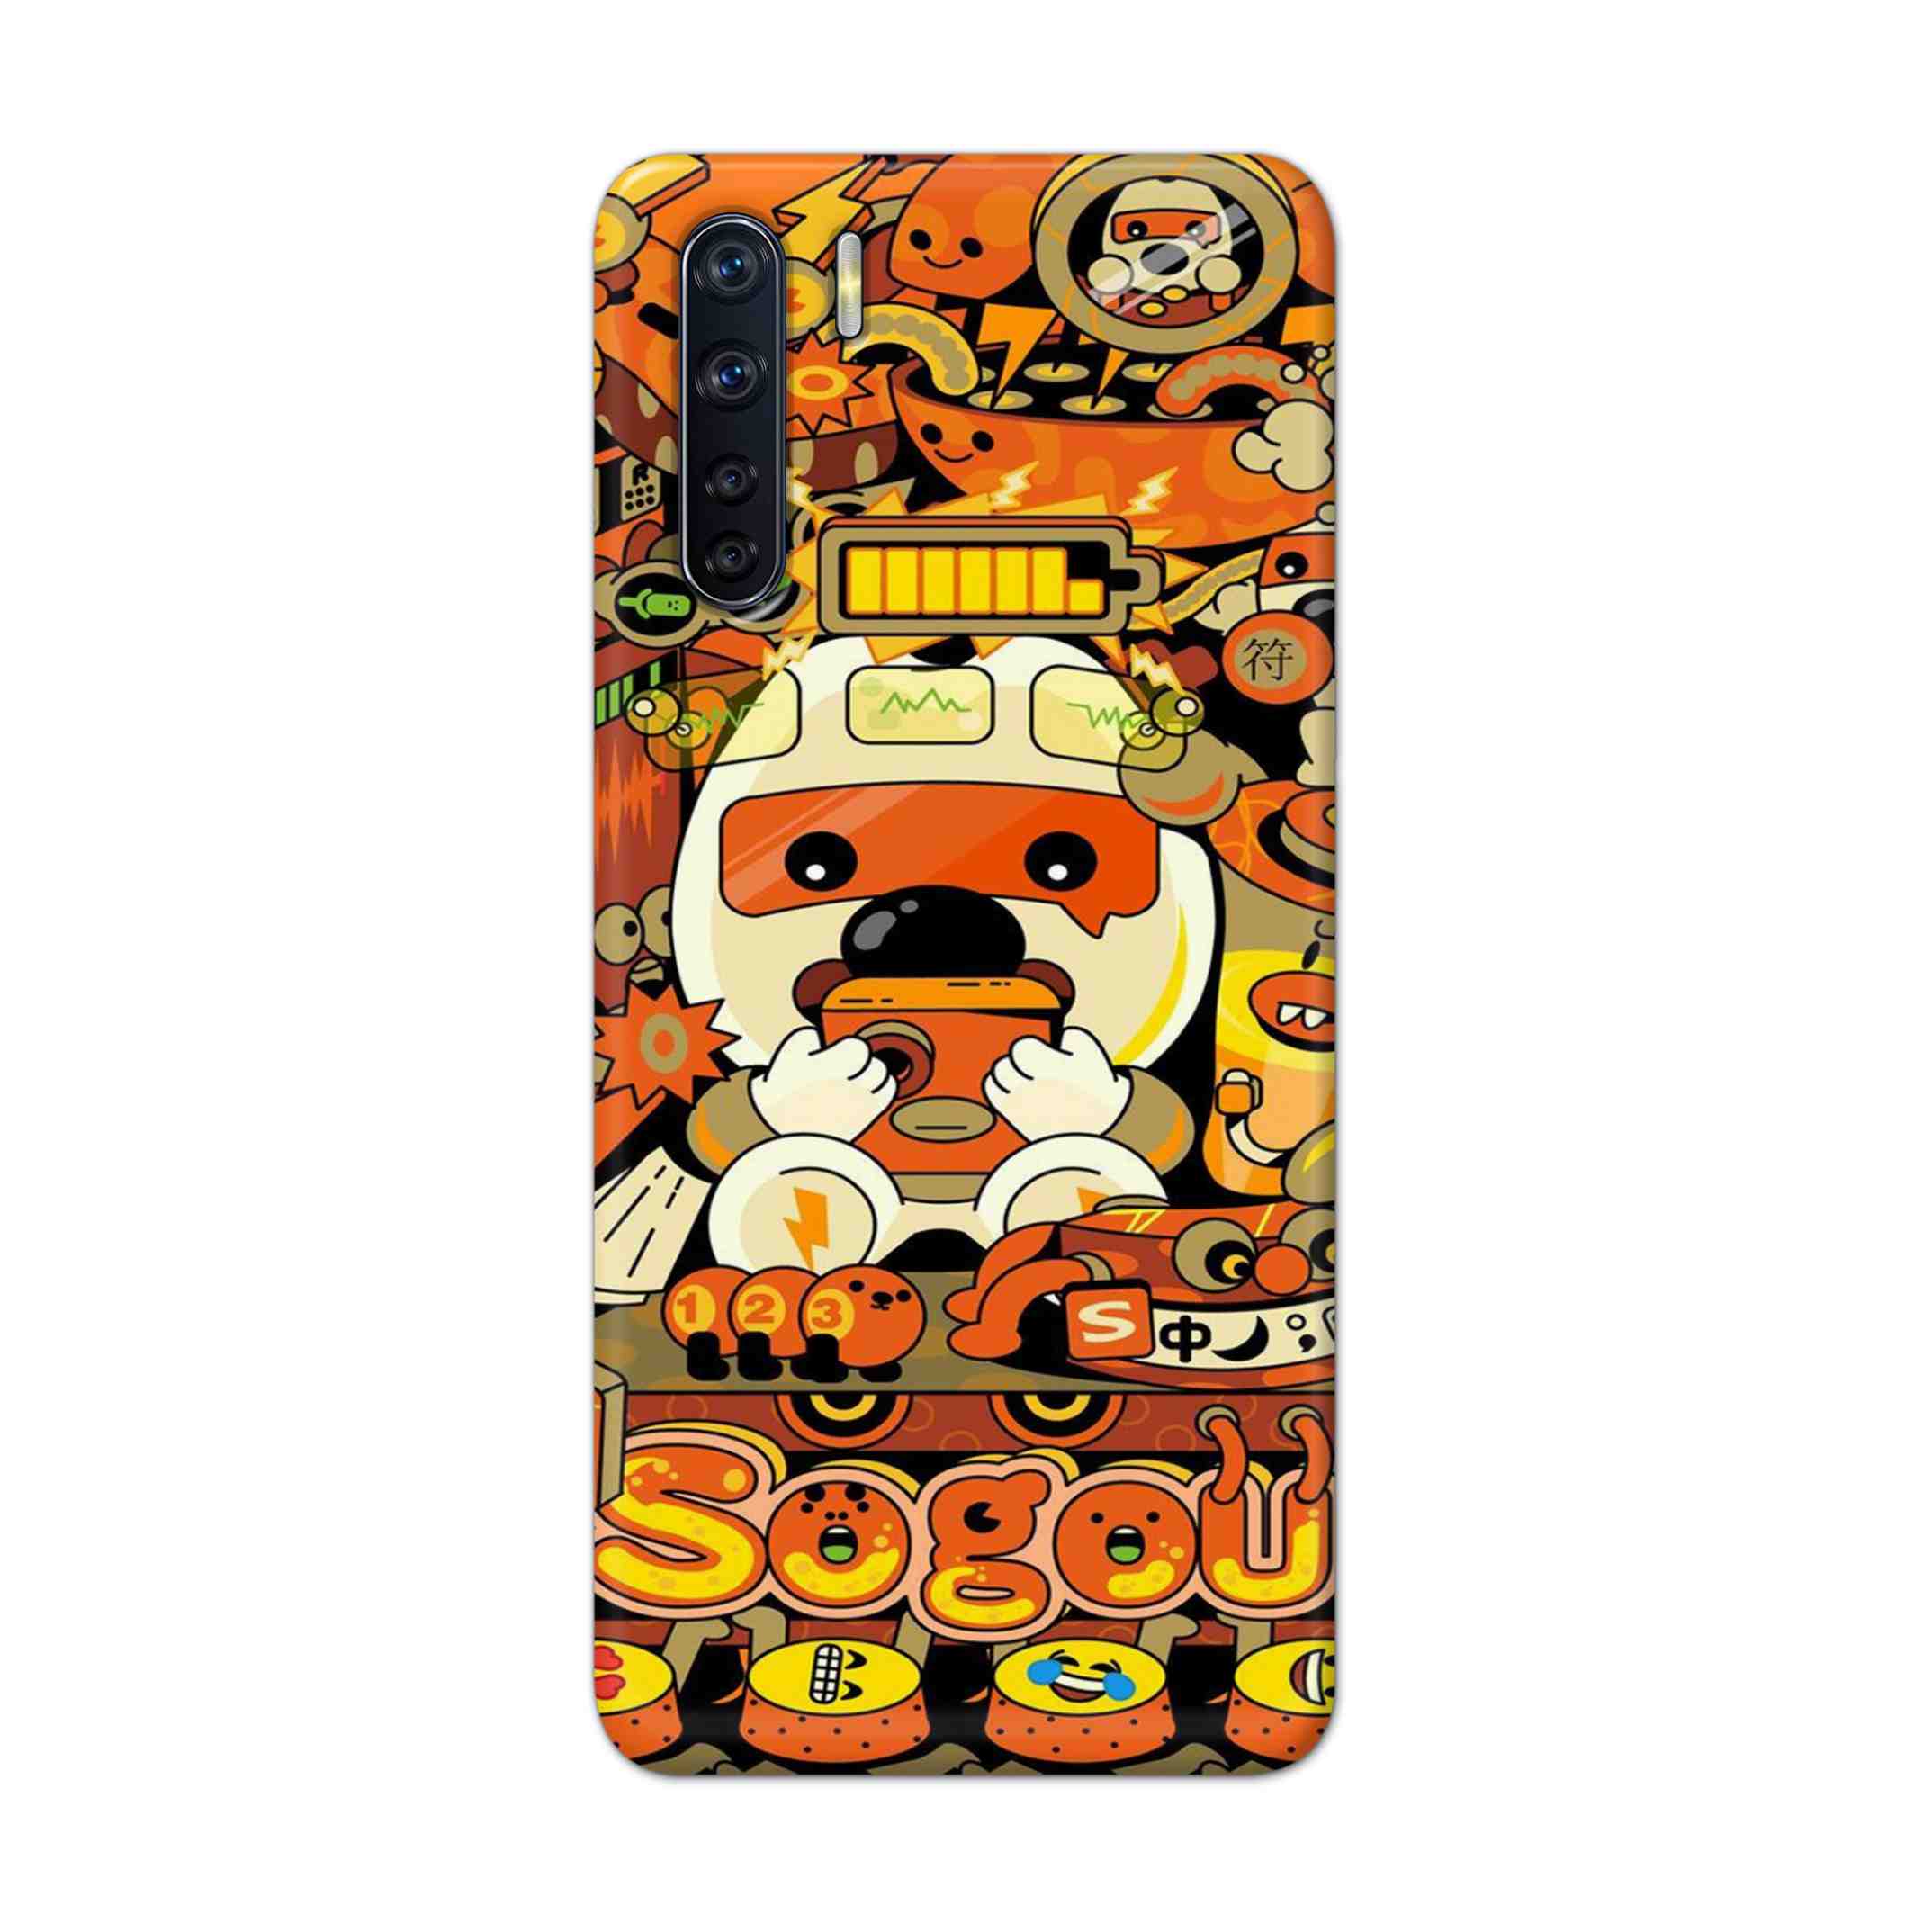 Buy Sogou Hard Back Mobile Phone Case Cover For OPPO F15 Online